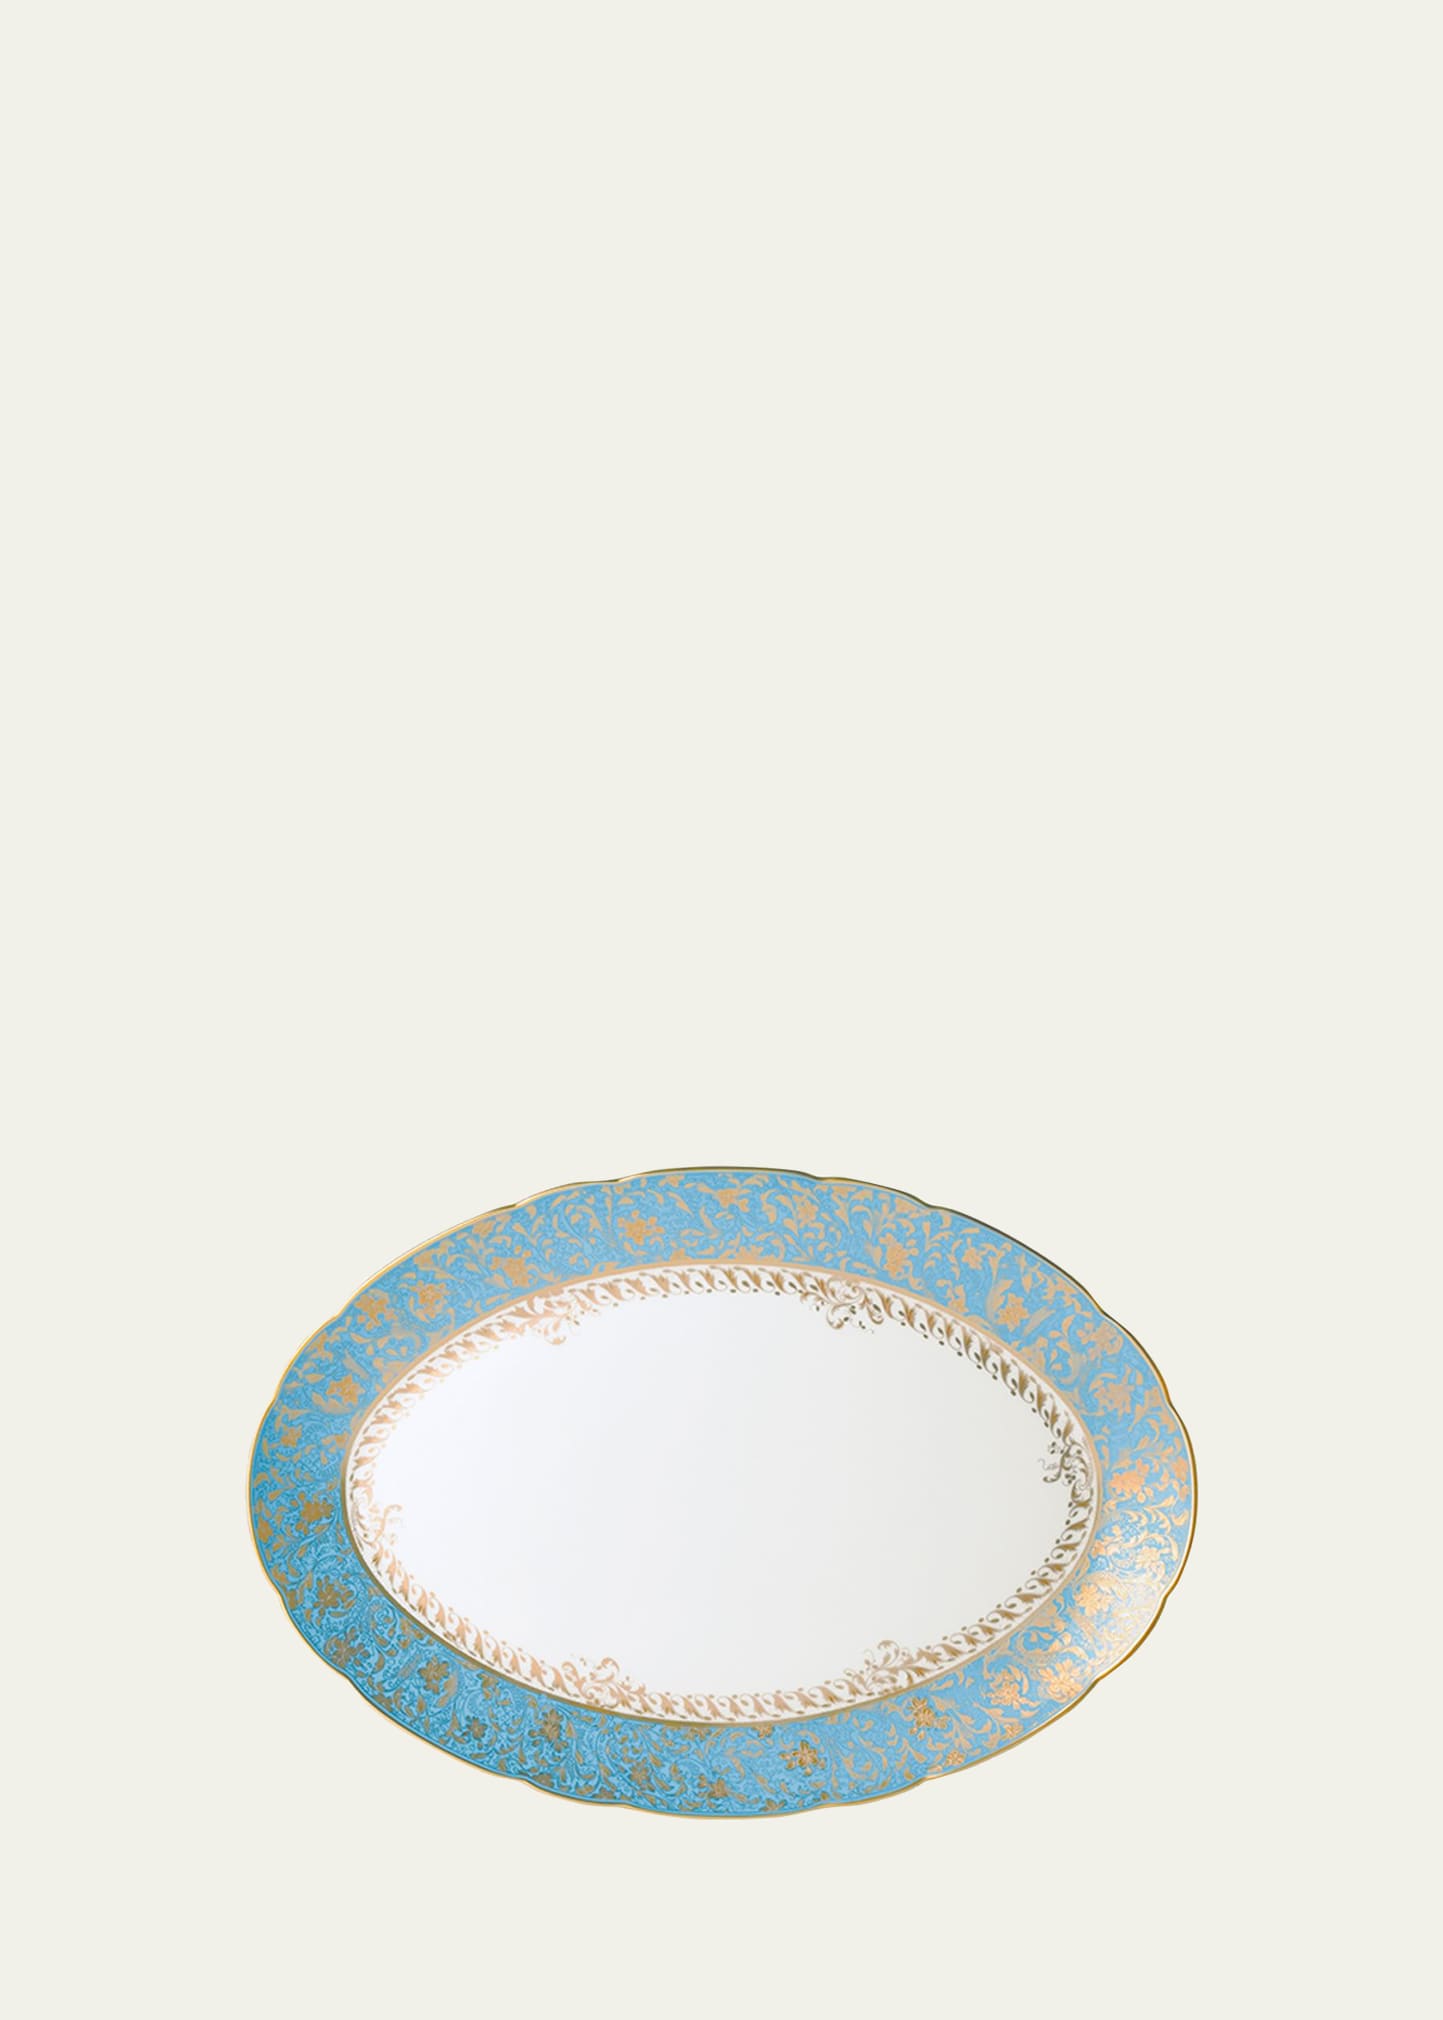 Bernardaud Eden Turquoise Oval Platter, 15" In White